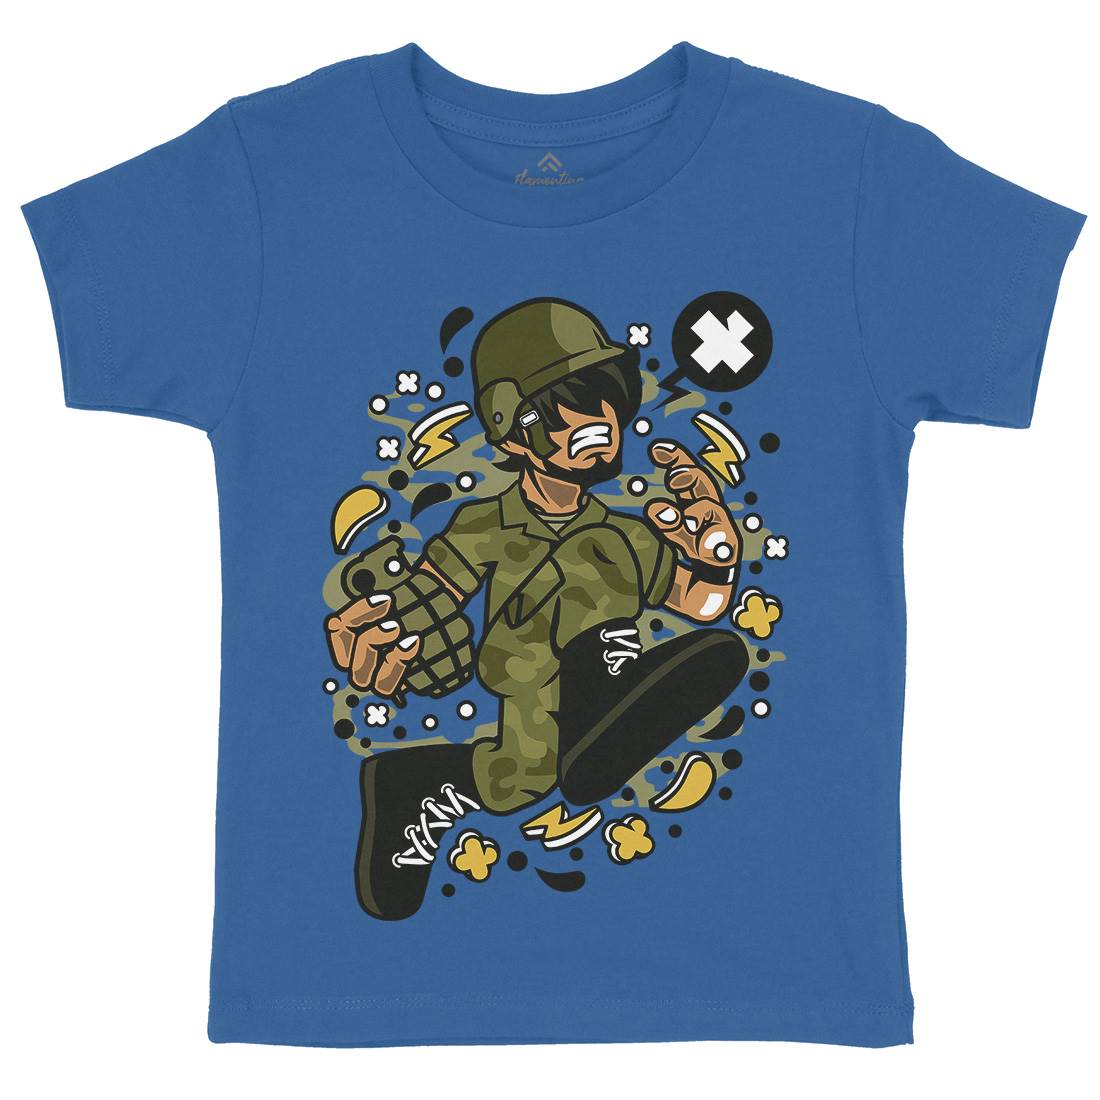 Soldier Running Kids Crew Neck T-Shirt Army C663